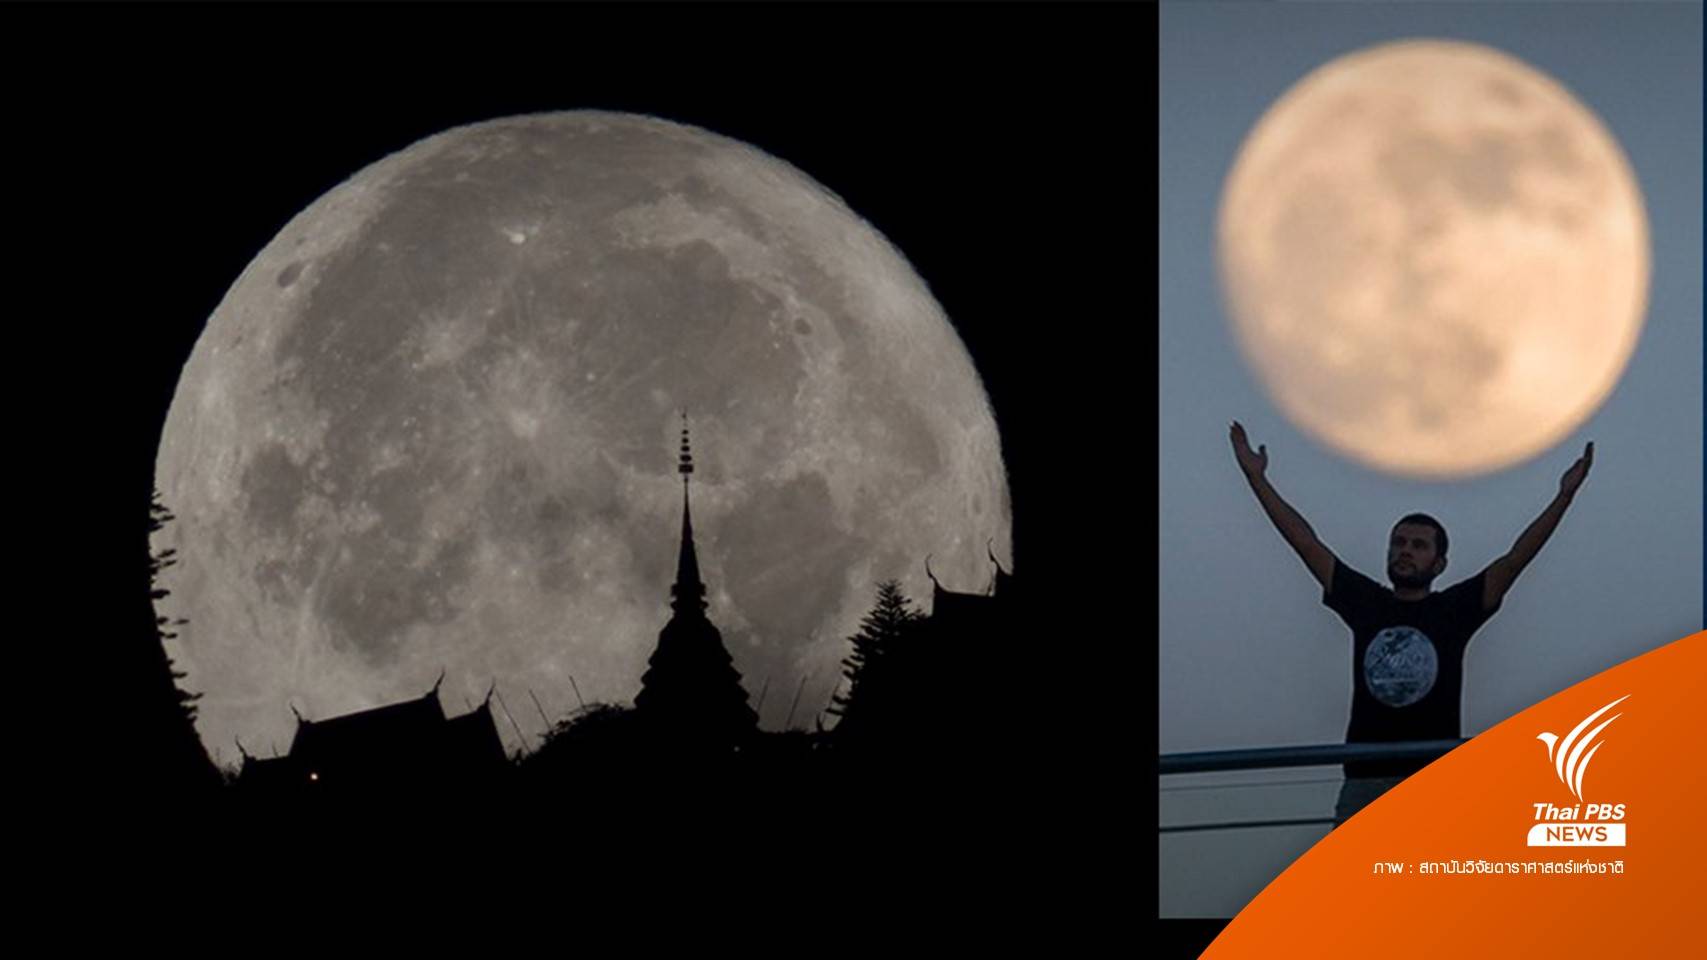 13 ก.ค. รอดู "ซูเปอร์ฟูลมูน" ดวงจันทร์เต็มดวงใกล้โลกที่สุดในรอบปี